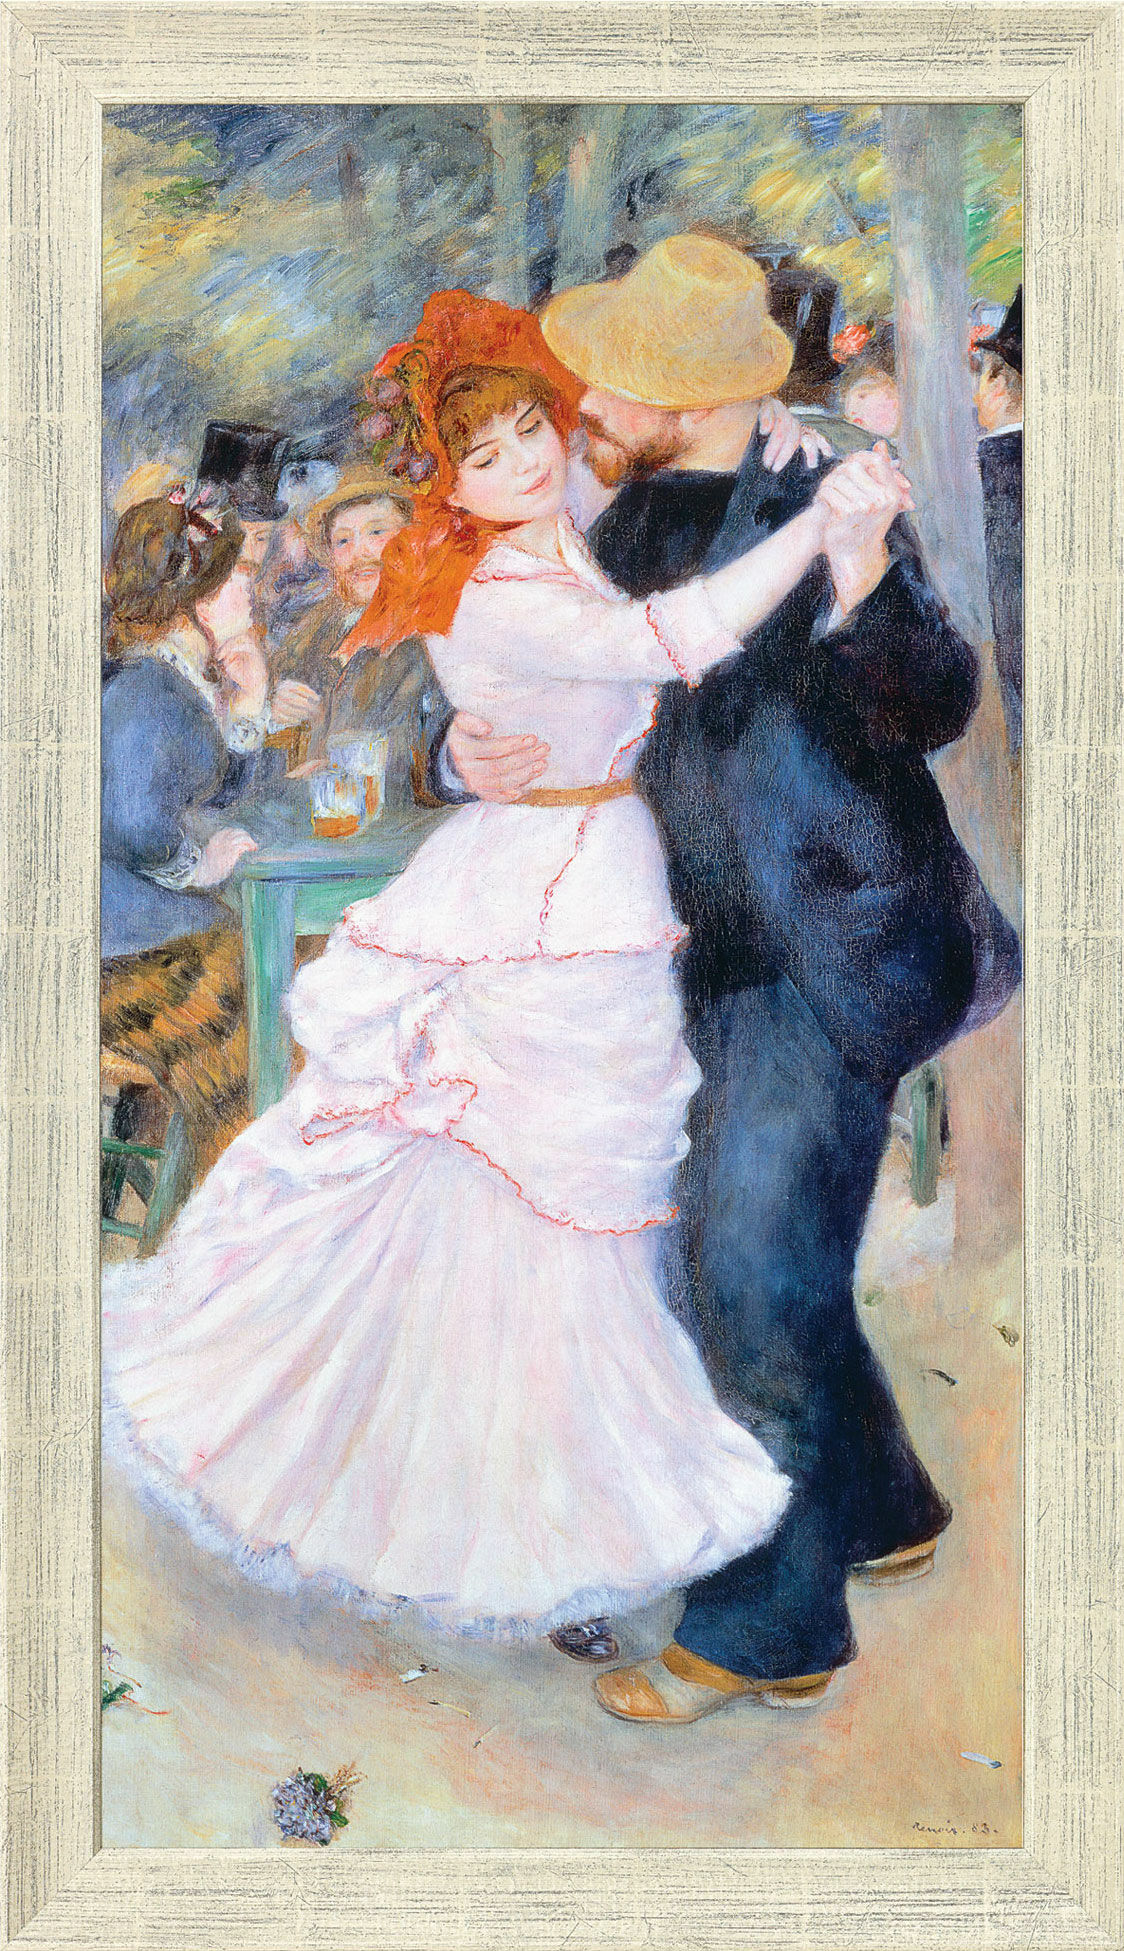 Billede "Dans på Bougival" (1883), indrammet von Auguste Renoir